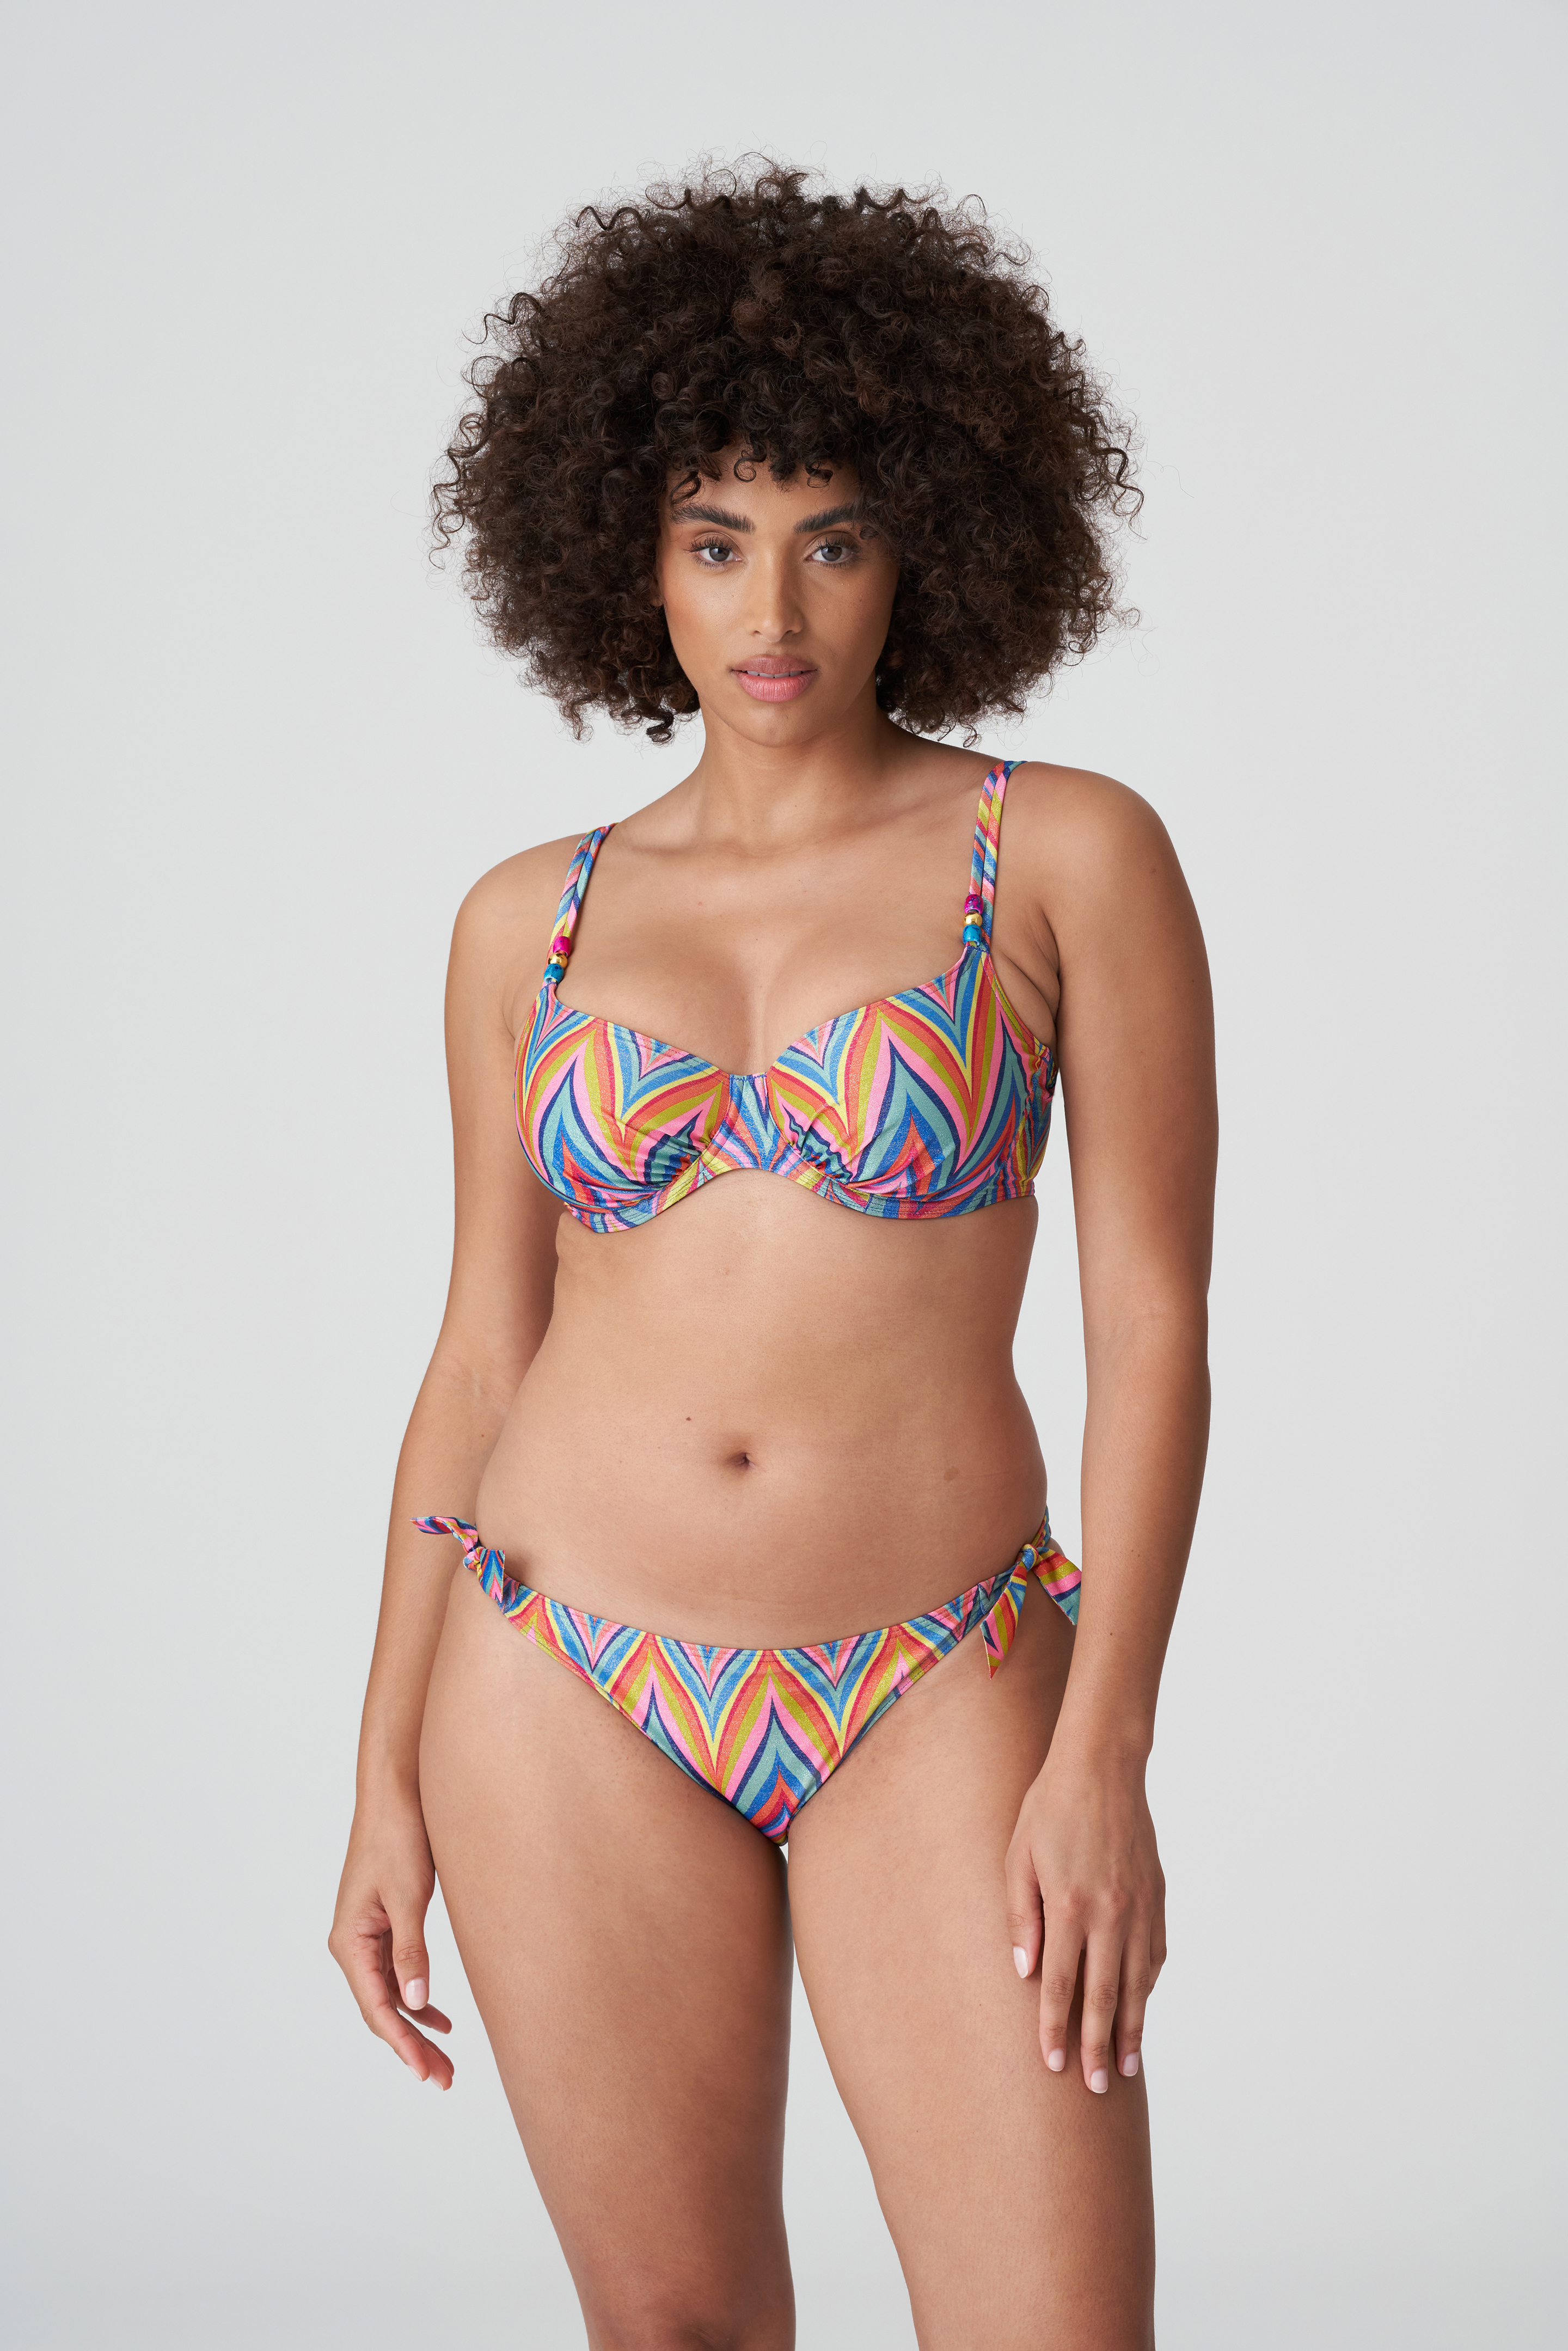 Primadonna - Haut de bikini Kea rainbow Multi 38 D